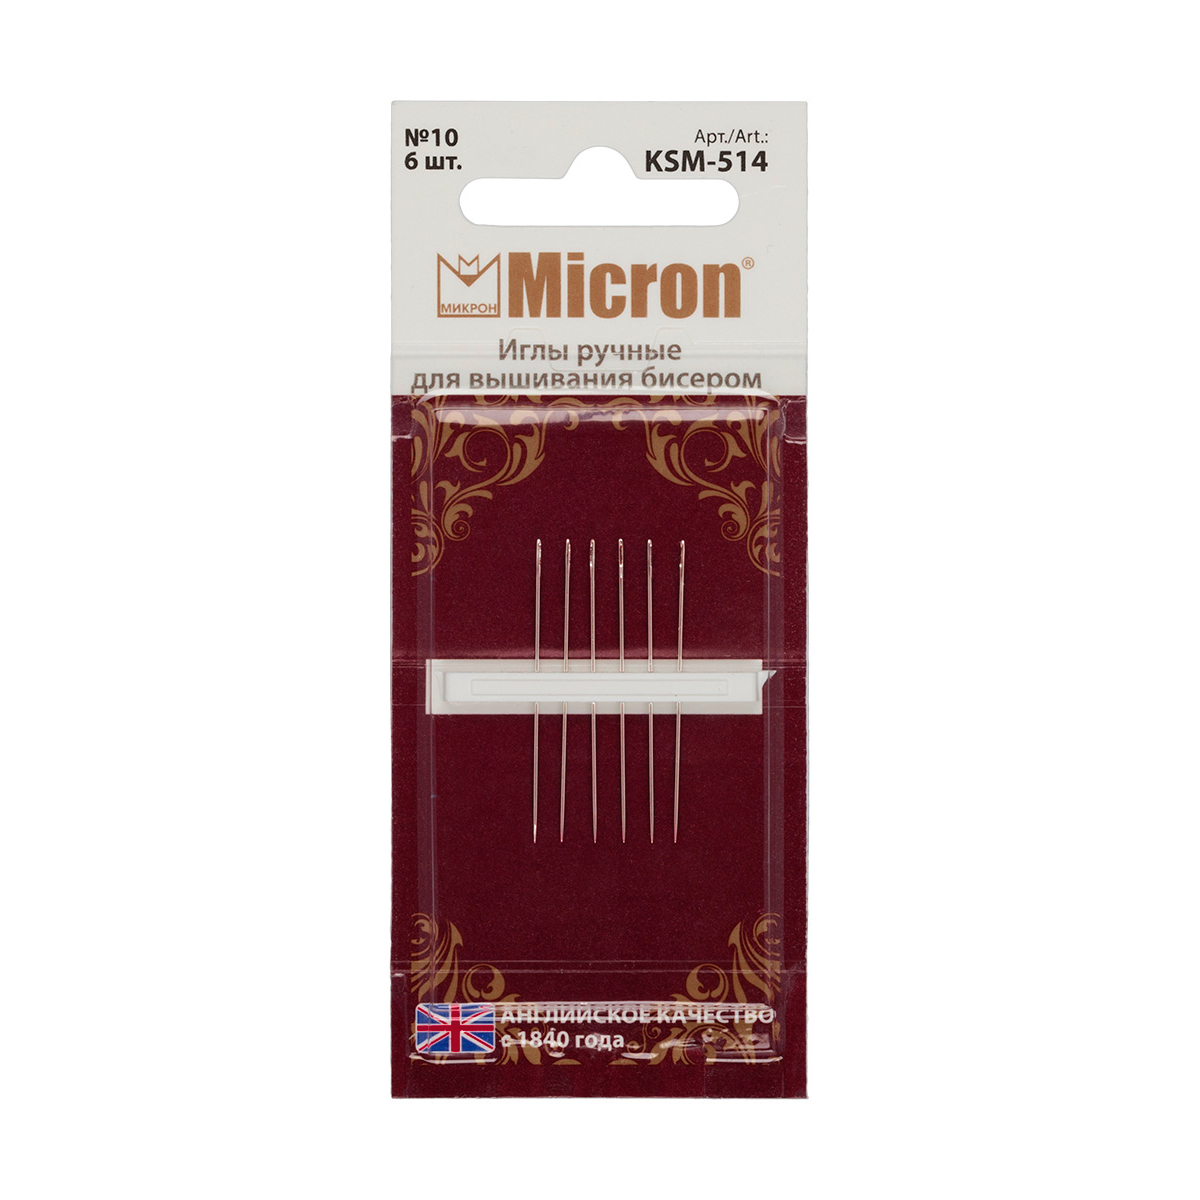 Иглы для шитья ручные Micron KSM-514 для вышивания бисером в блистере 6 шт. 10 Фото 1.